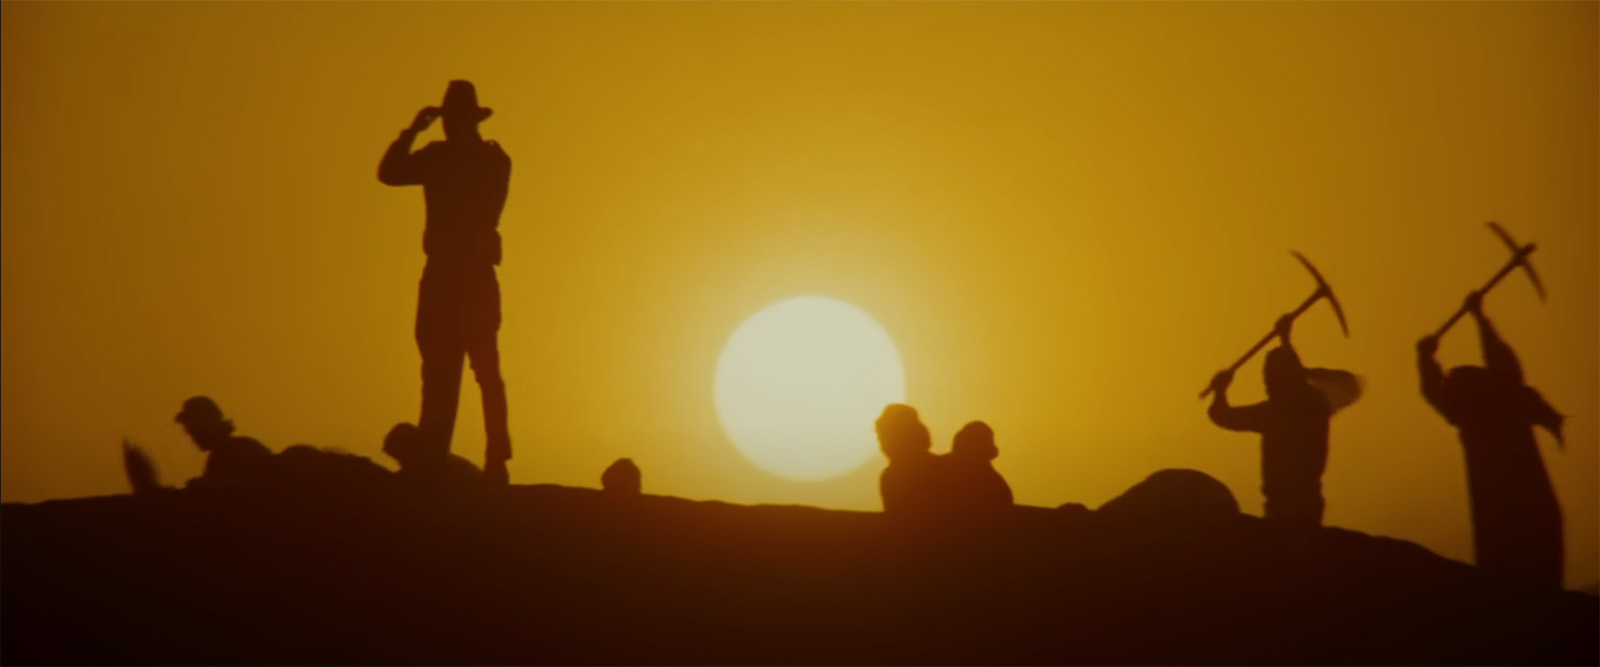 Original desert scene from Raider of the Lost Ark.